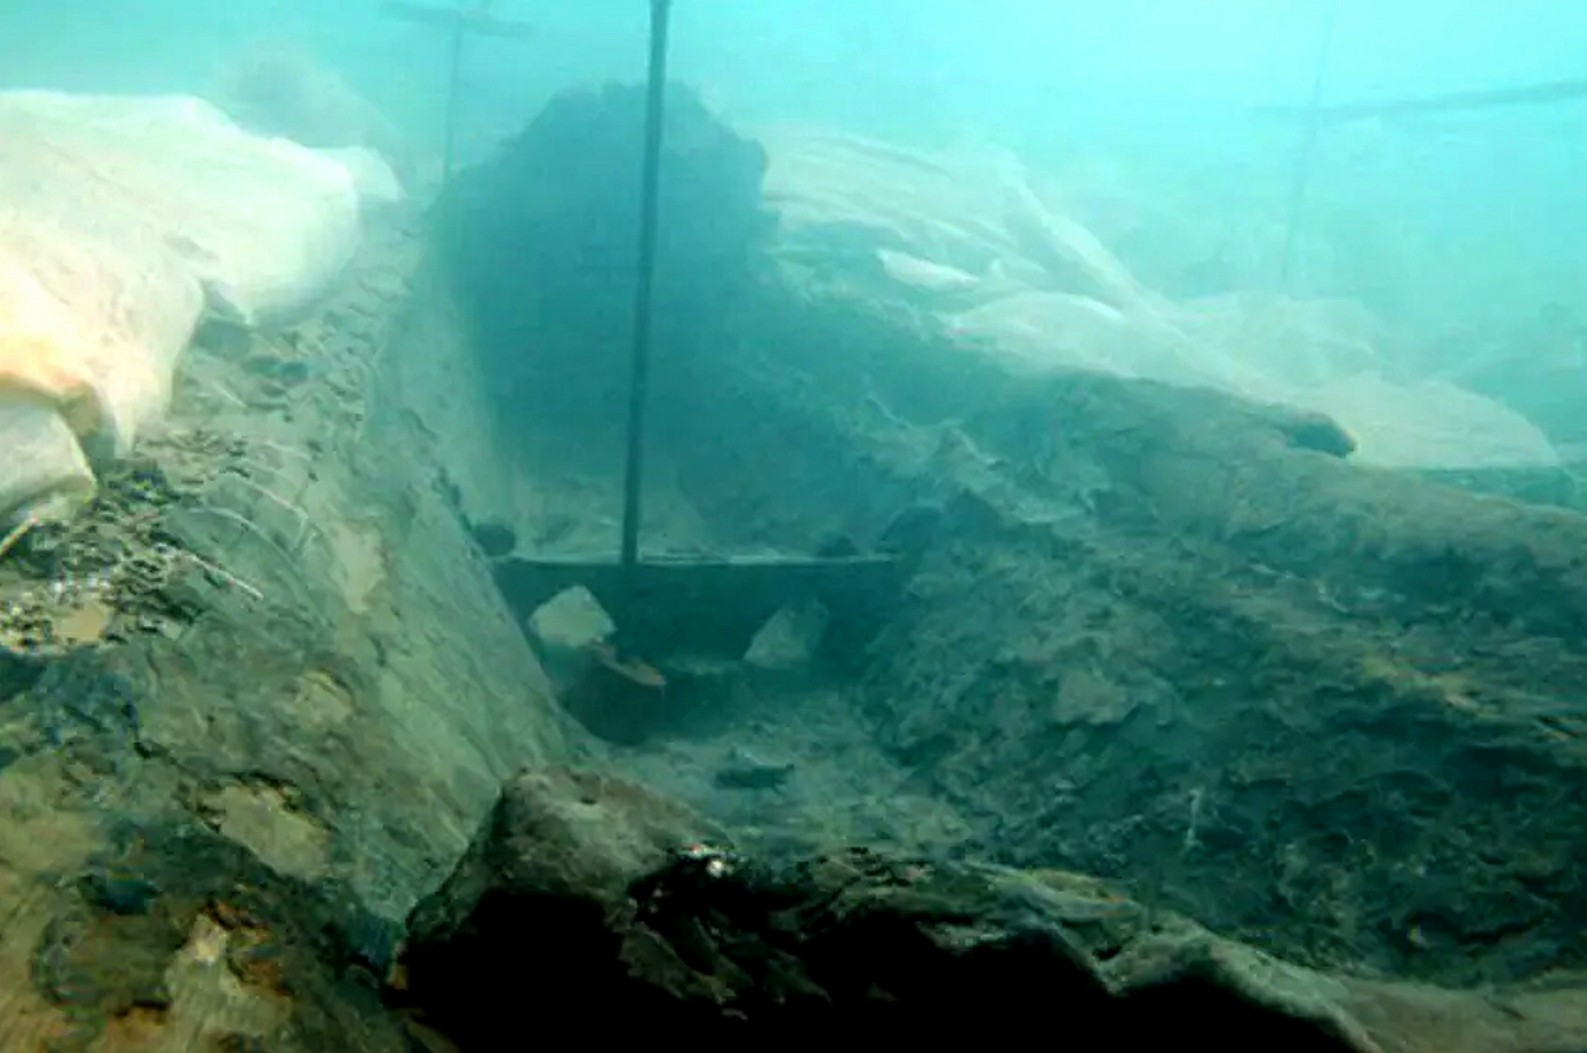 Hallan un naufragio de 2,600 años frente a las costas de Sicilia